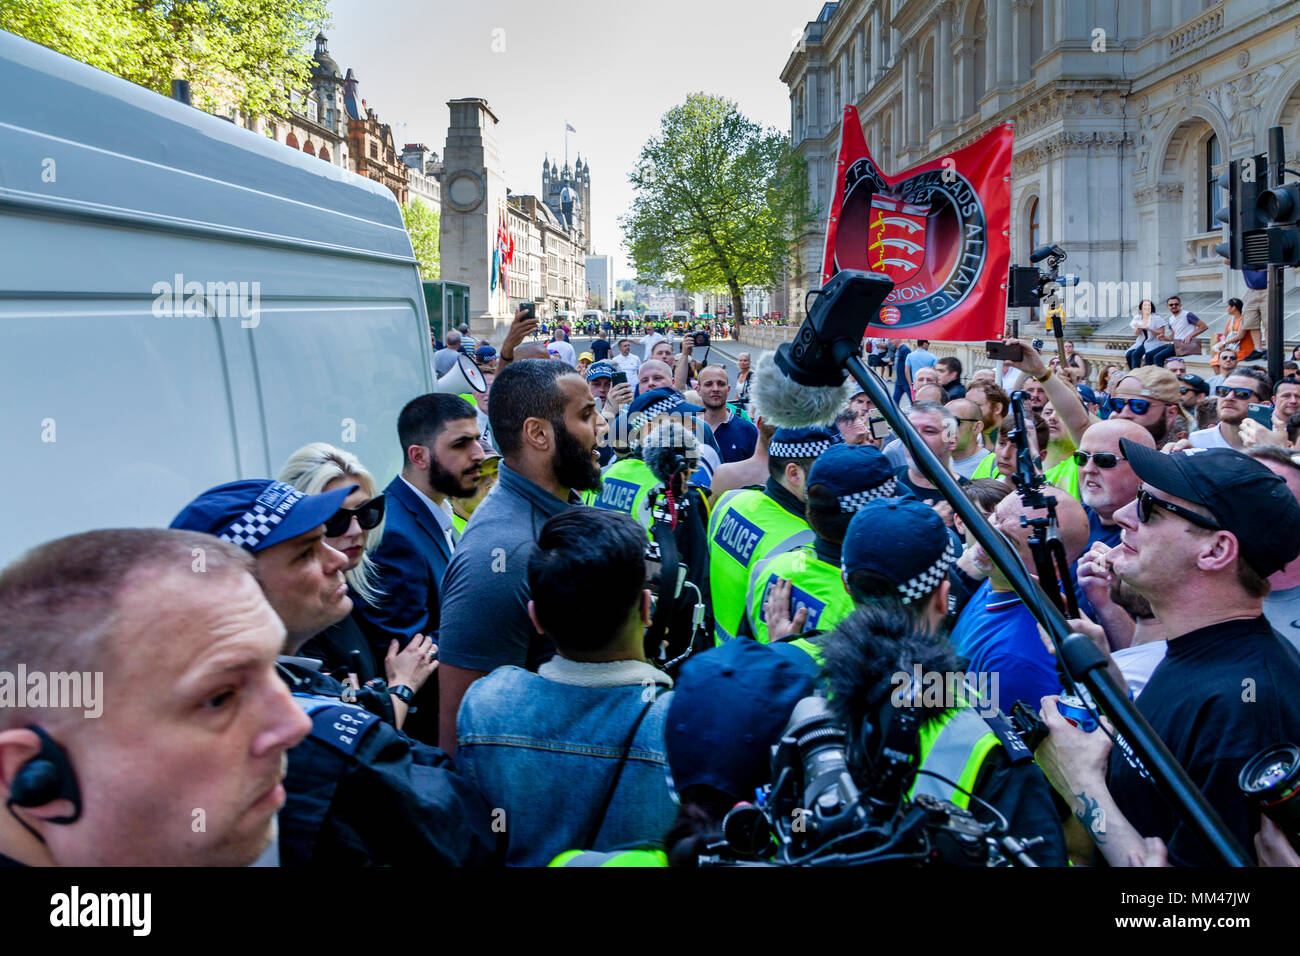 Ali e Dawah Muhammed Hijab entrambi eminenti relatori musulmani sono confrontati da non musulmani durante una libertà di parola rally, London, Regno Unito Foto Stock